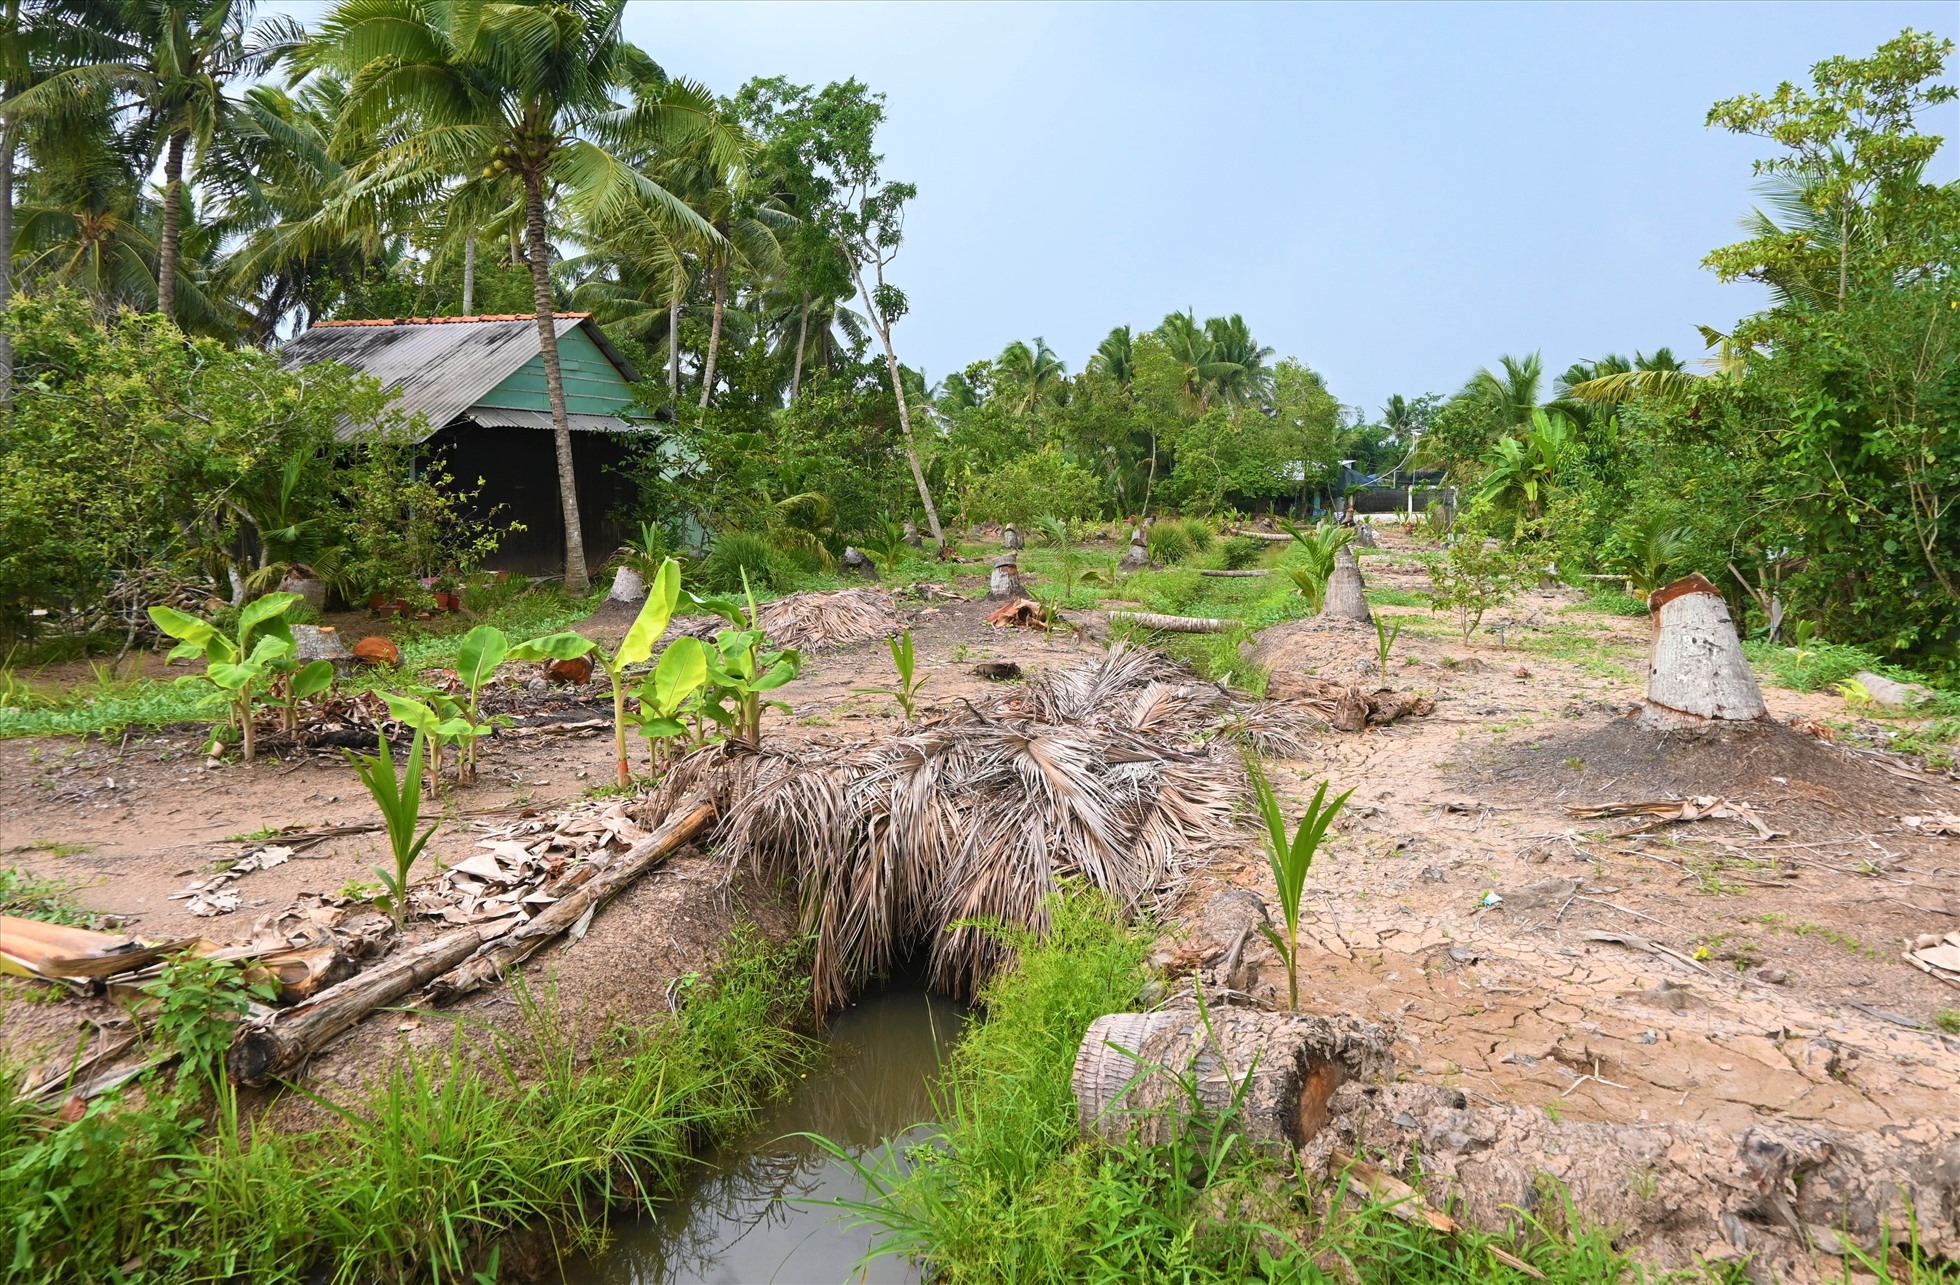 Một vườn dừa ở huyện Châu Thành (tỉnh Bến Tre) chết rụi vì sâu đầu đen, chủ vườn đã trồng dừa lại. Ảnh: Thành Nhân